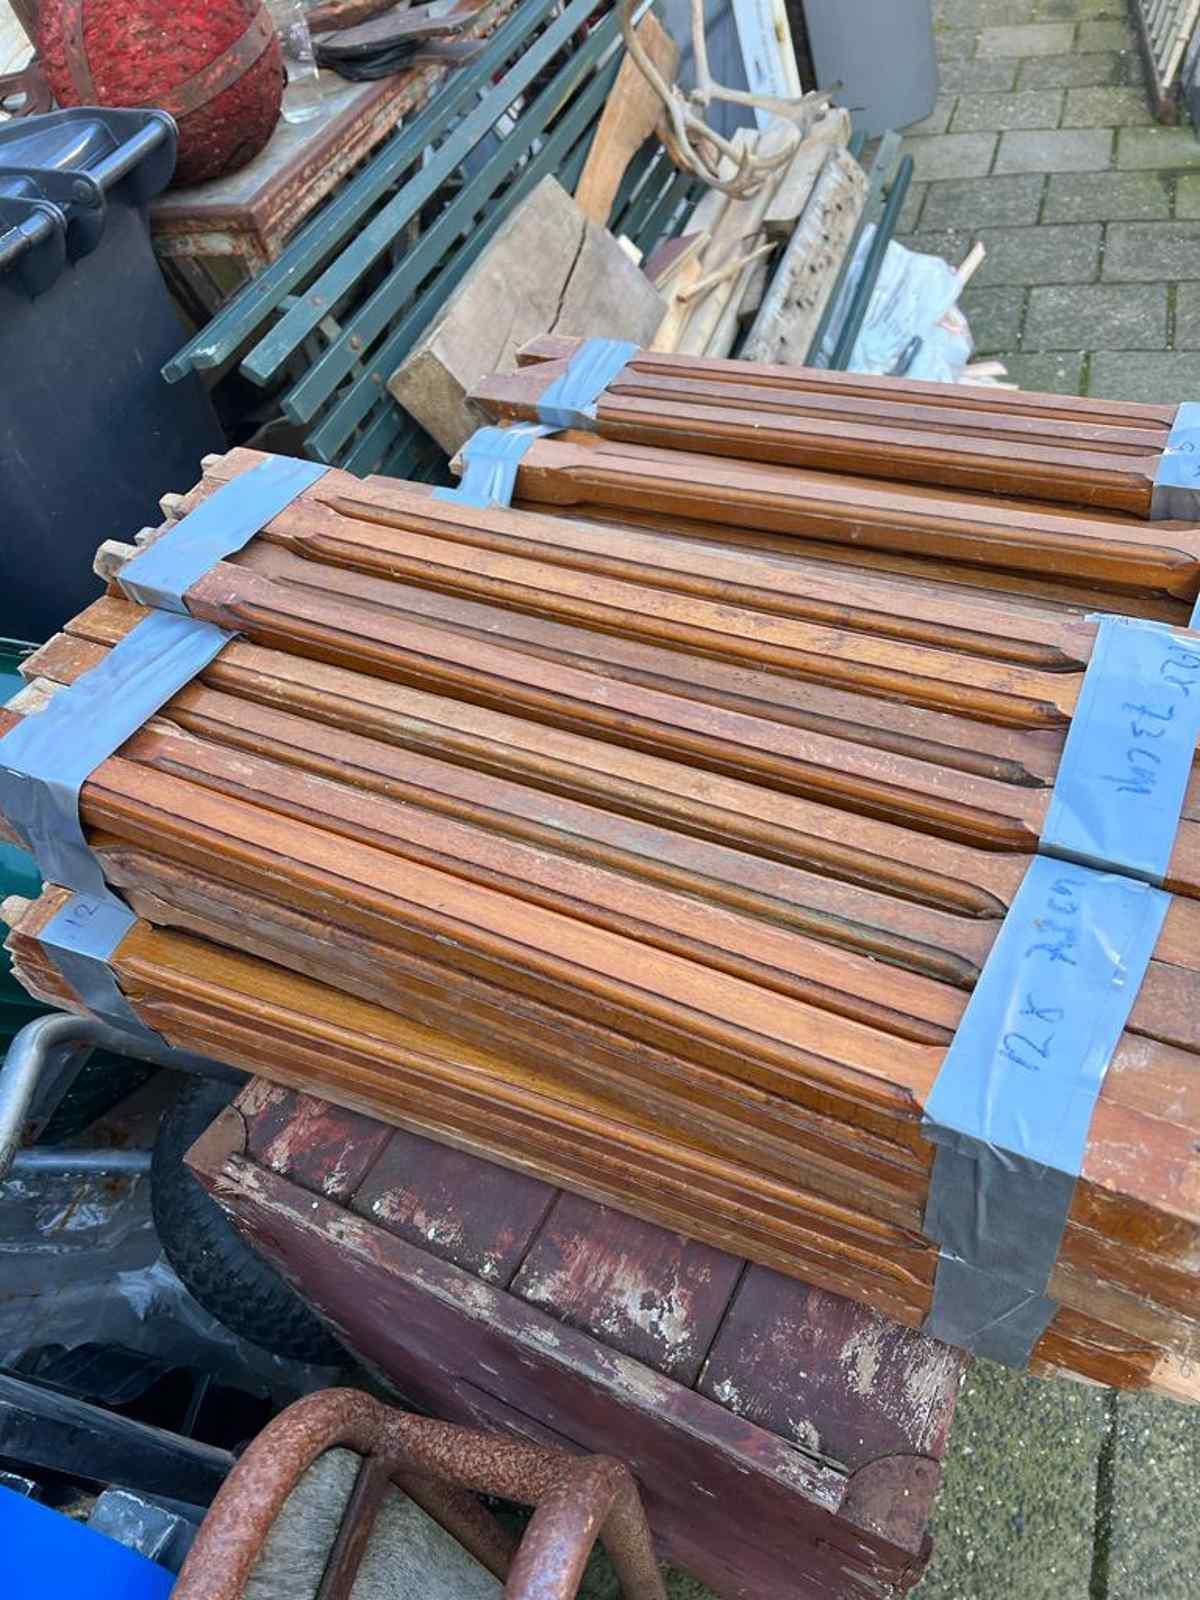 Grote partij houten trapspijlen